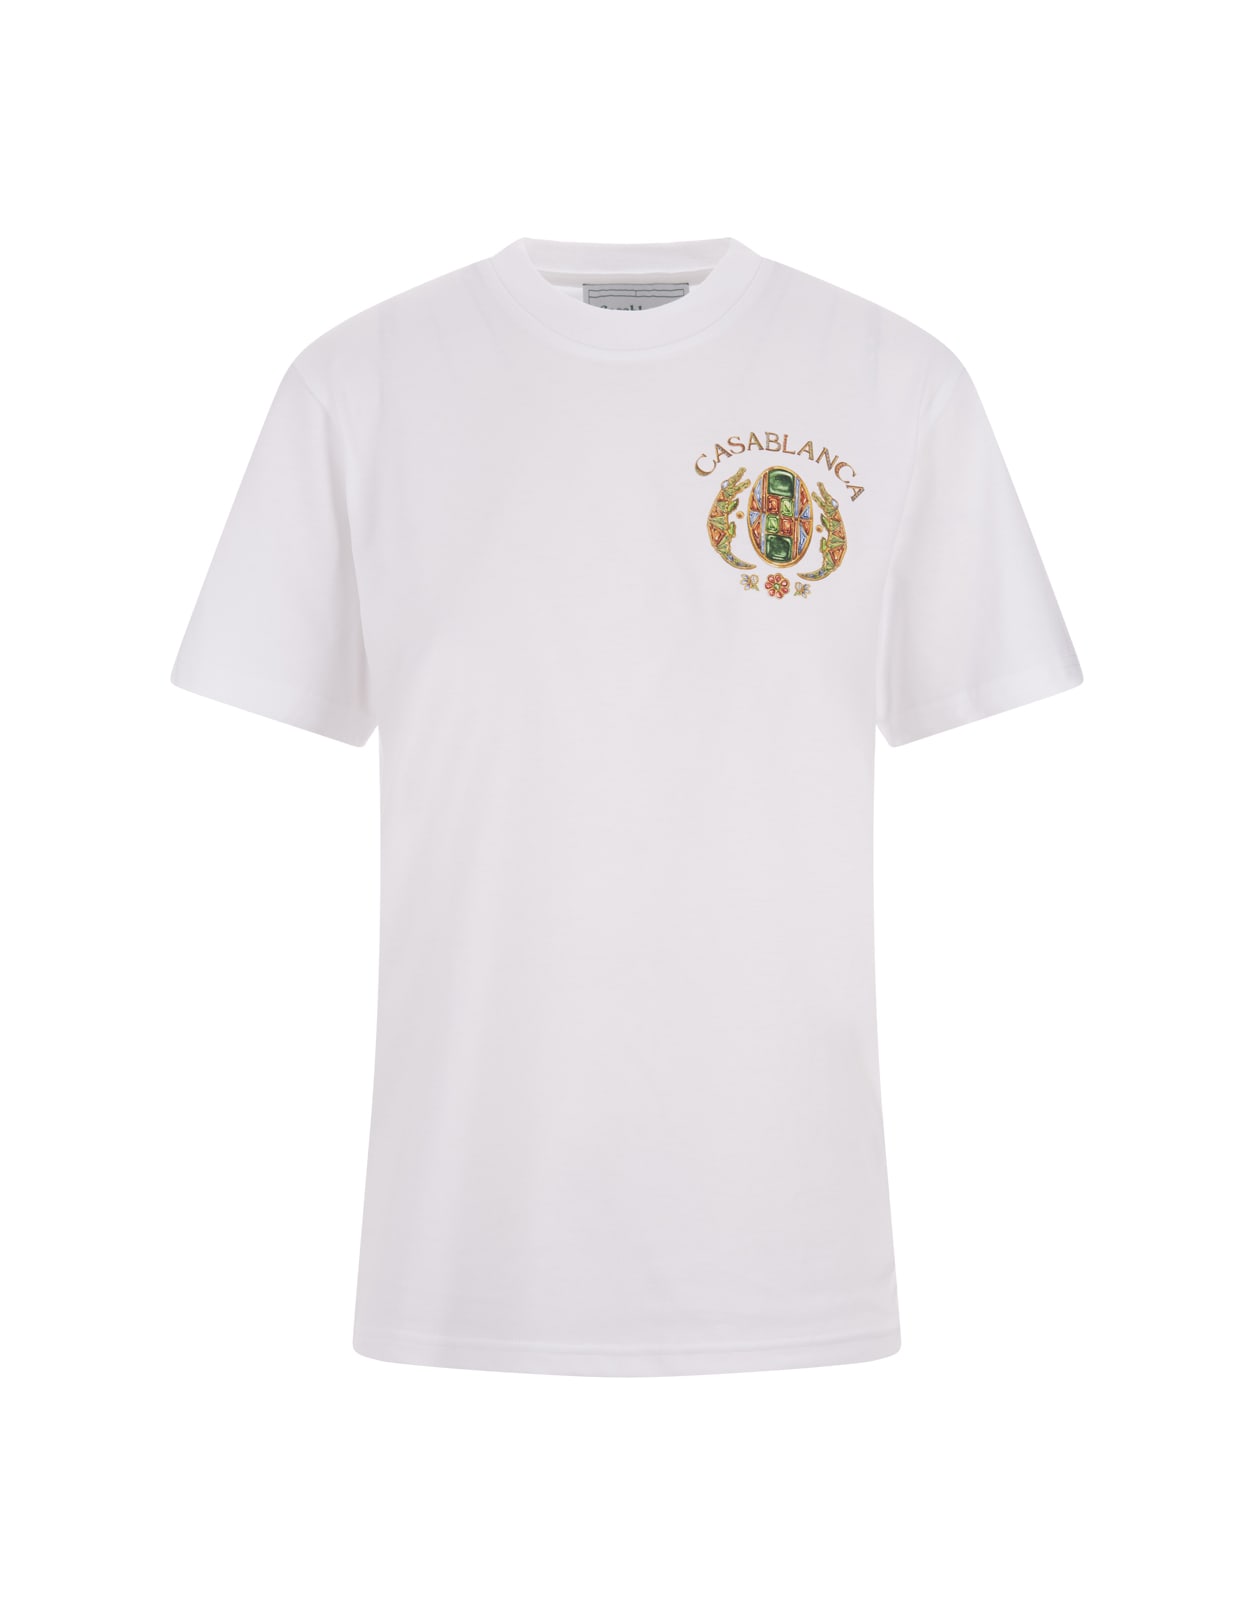 Casablanca Joyaux Dafrique Tennis Club T-shirt In White